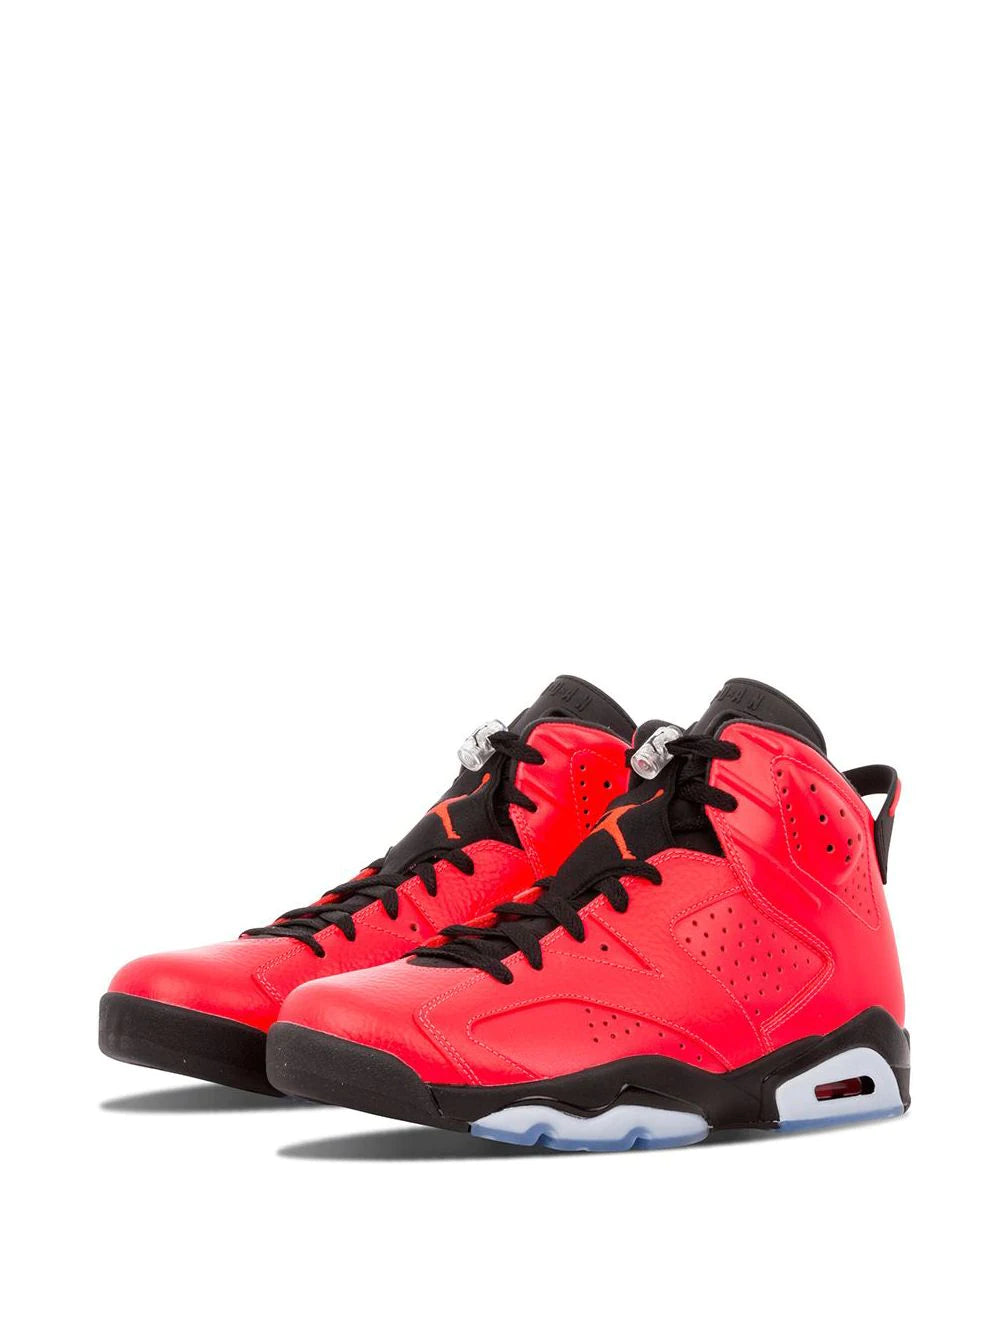 Full Pair of Air Jordan 6 Retro Infrared (Toro) Sneakers